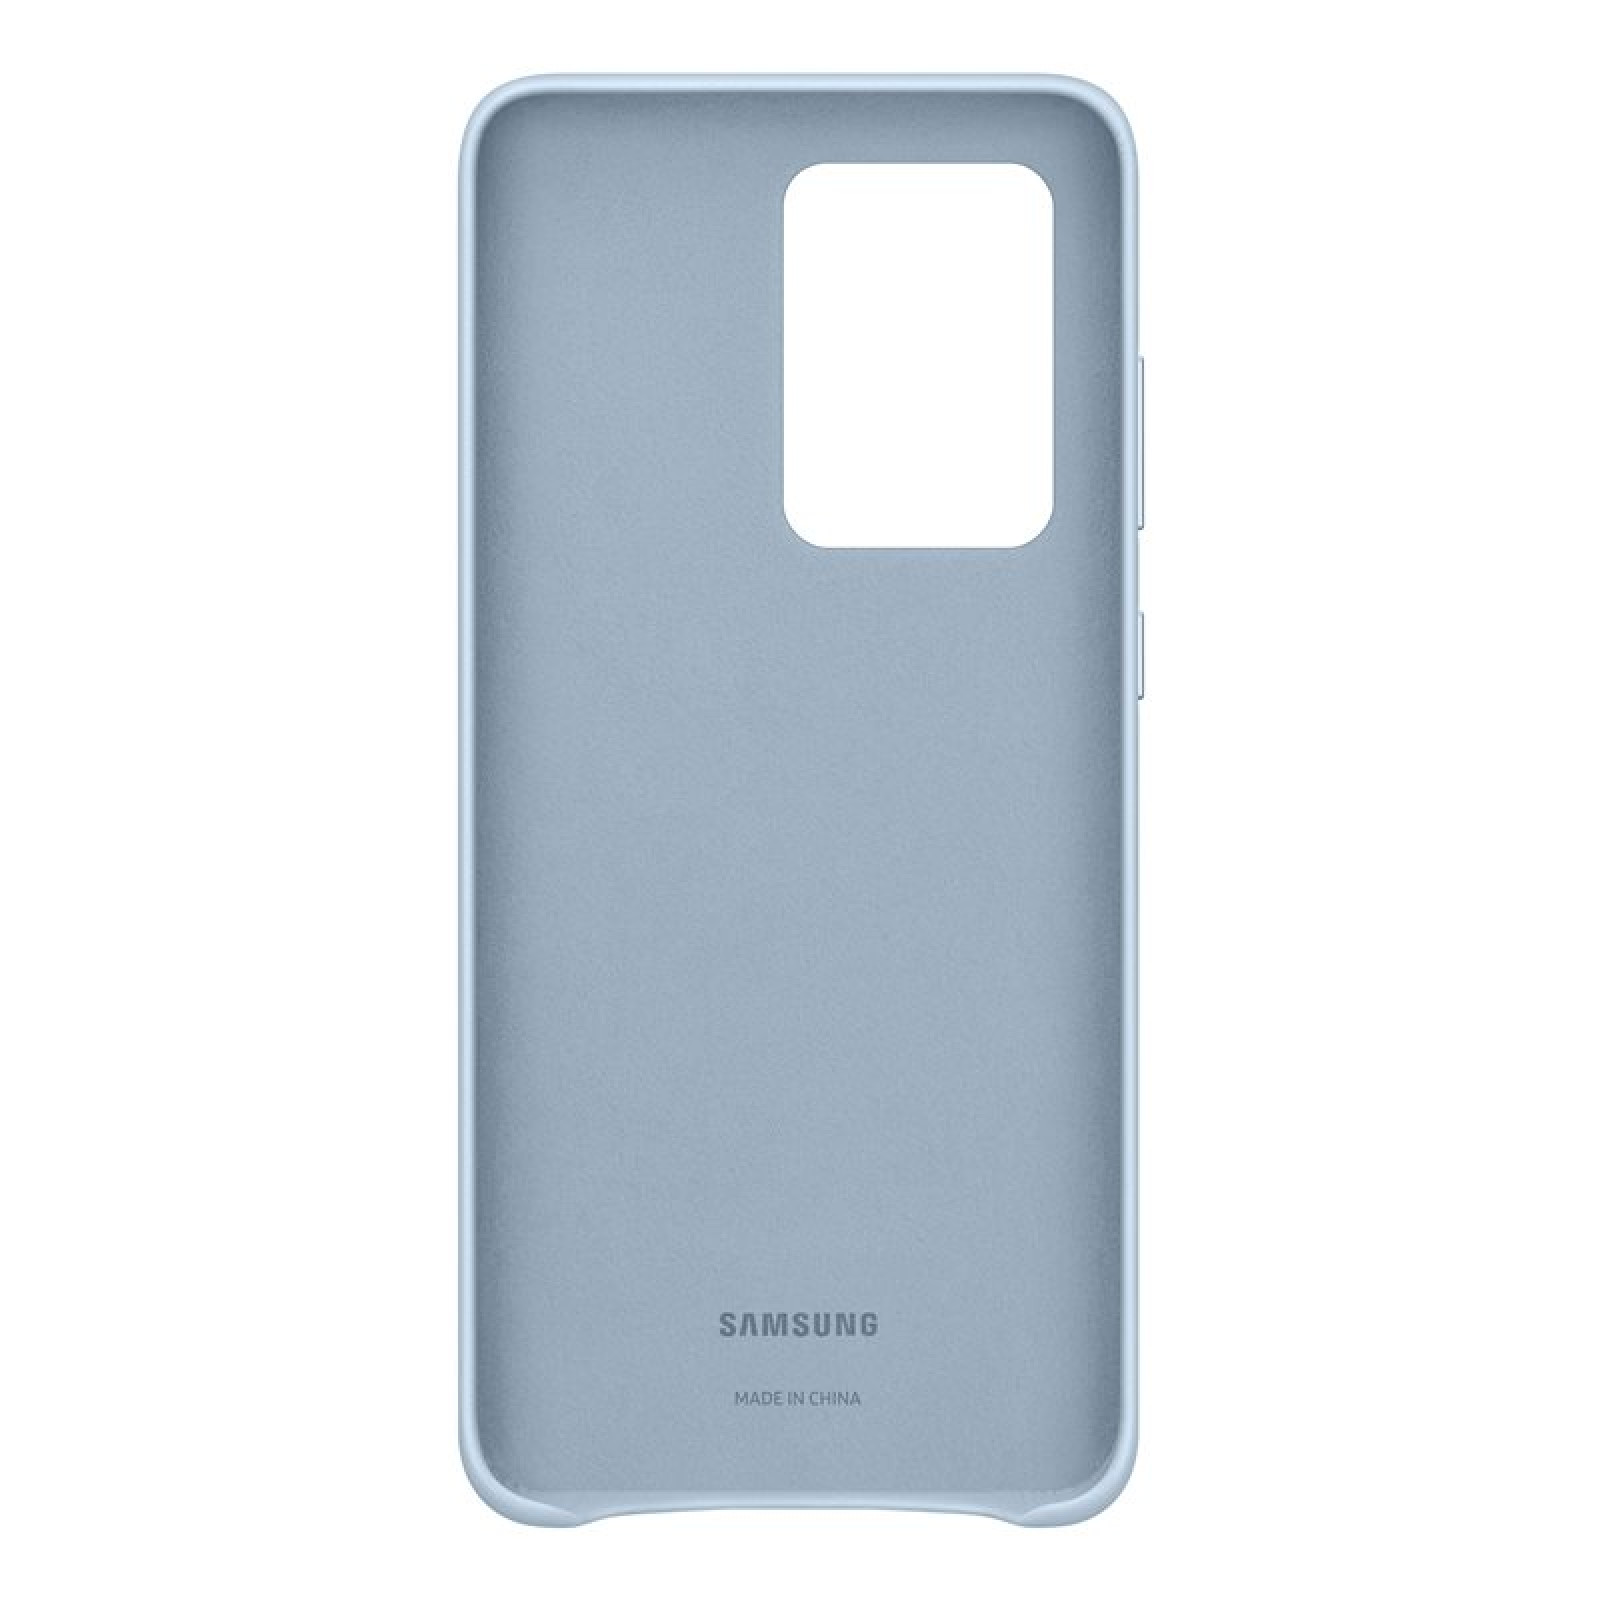 Оригинален Гръб Samsung Leather Cover за Galaxy S20 Ultra - Син, EF-VG988LLE